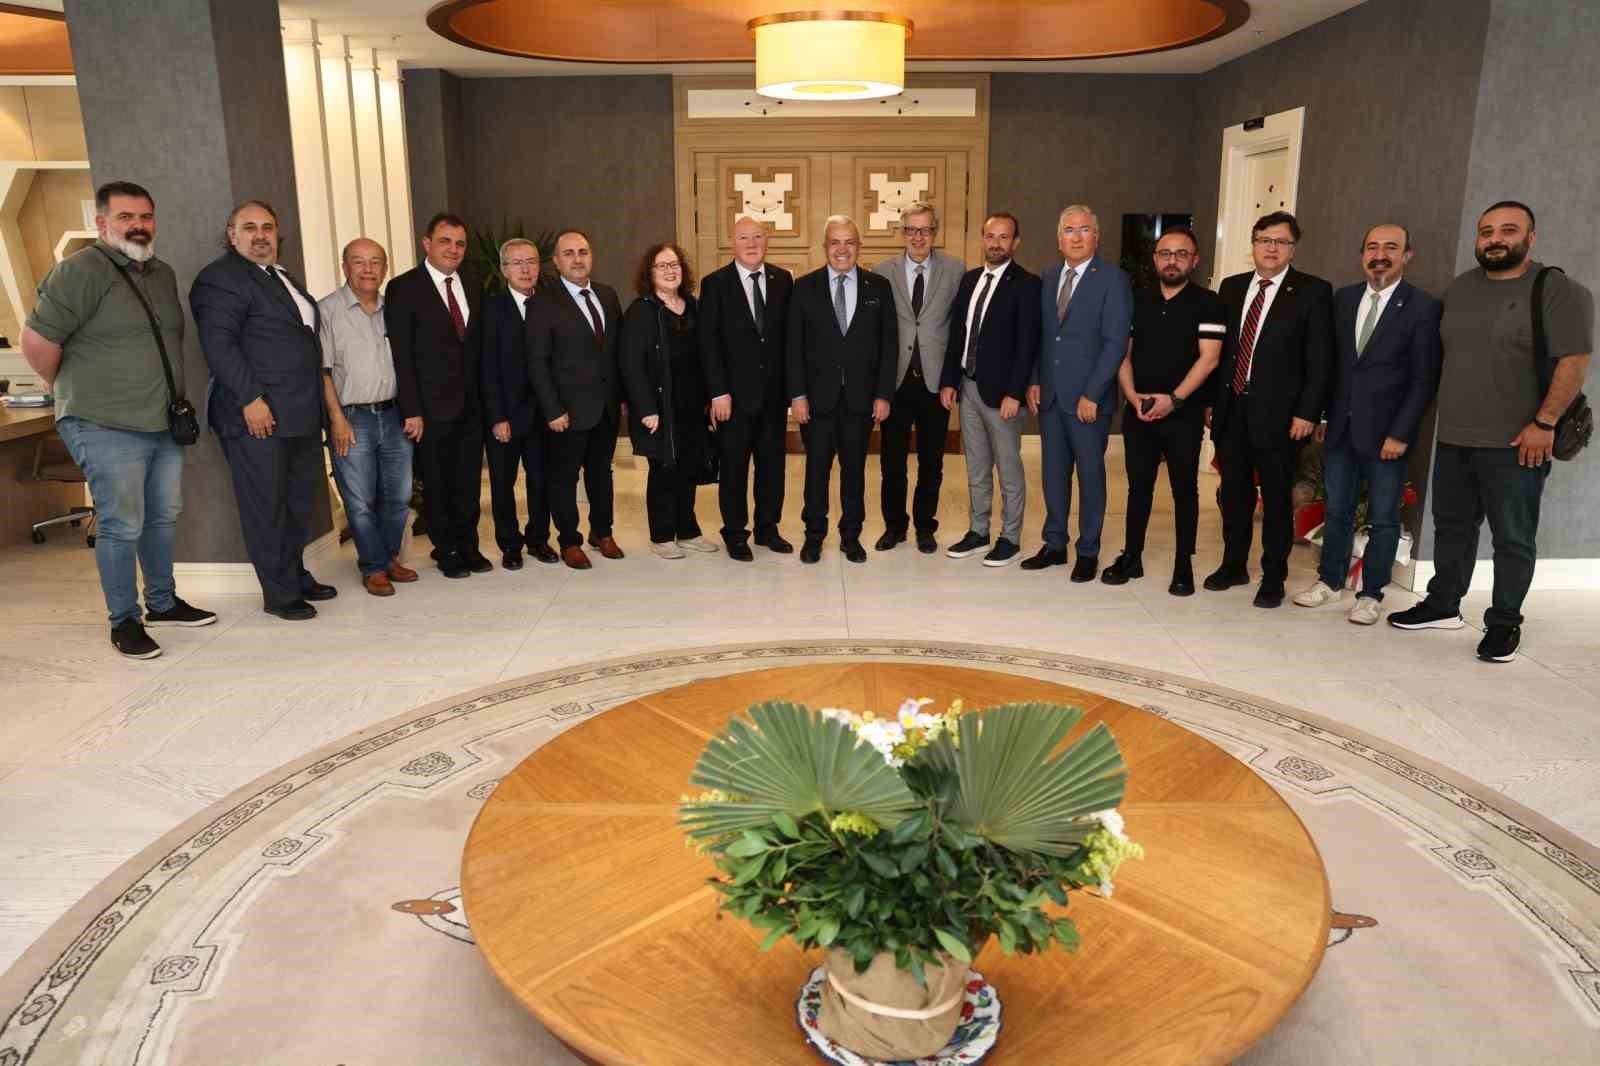 Başkan Şadi Özdemir: "Nilüfer tehlikenin eşiğinde"
